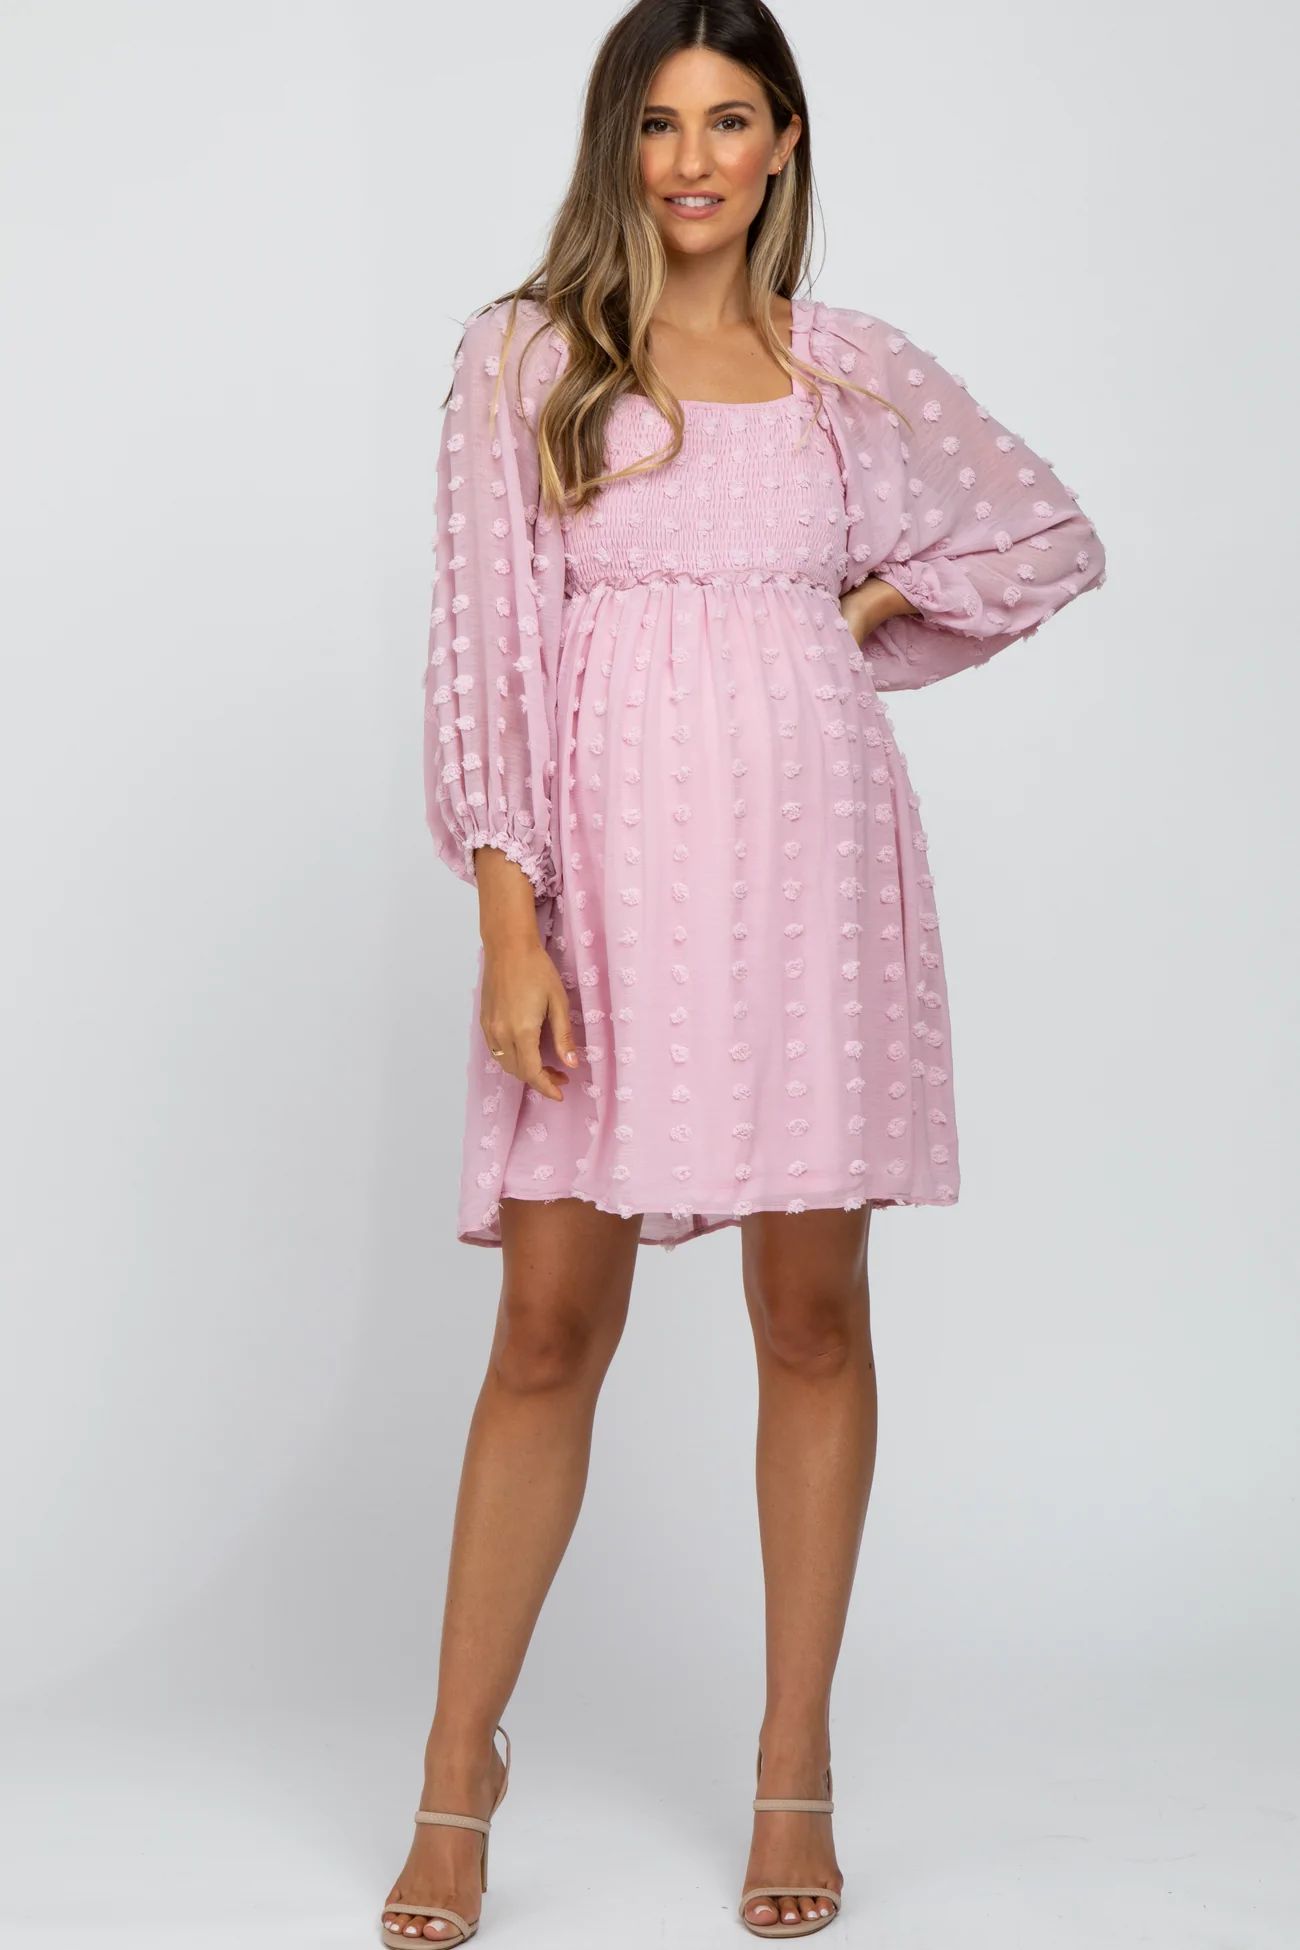 Pink Textured Dot Smocked Square Neck Chiffon Maternity Dress | PinkBlush Maternity